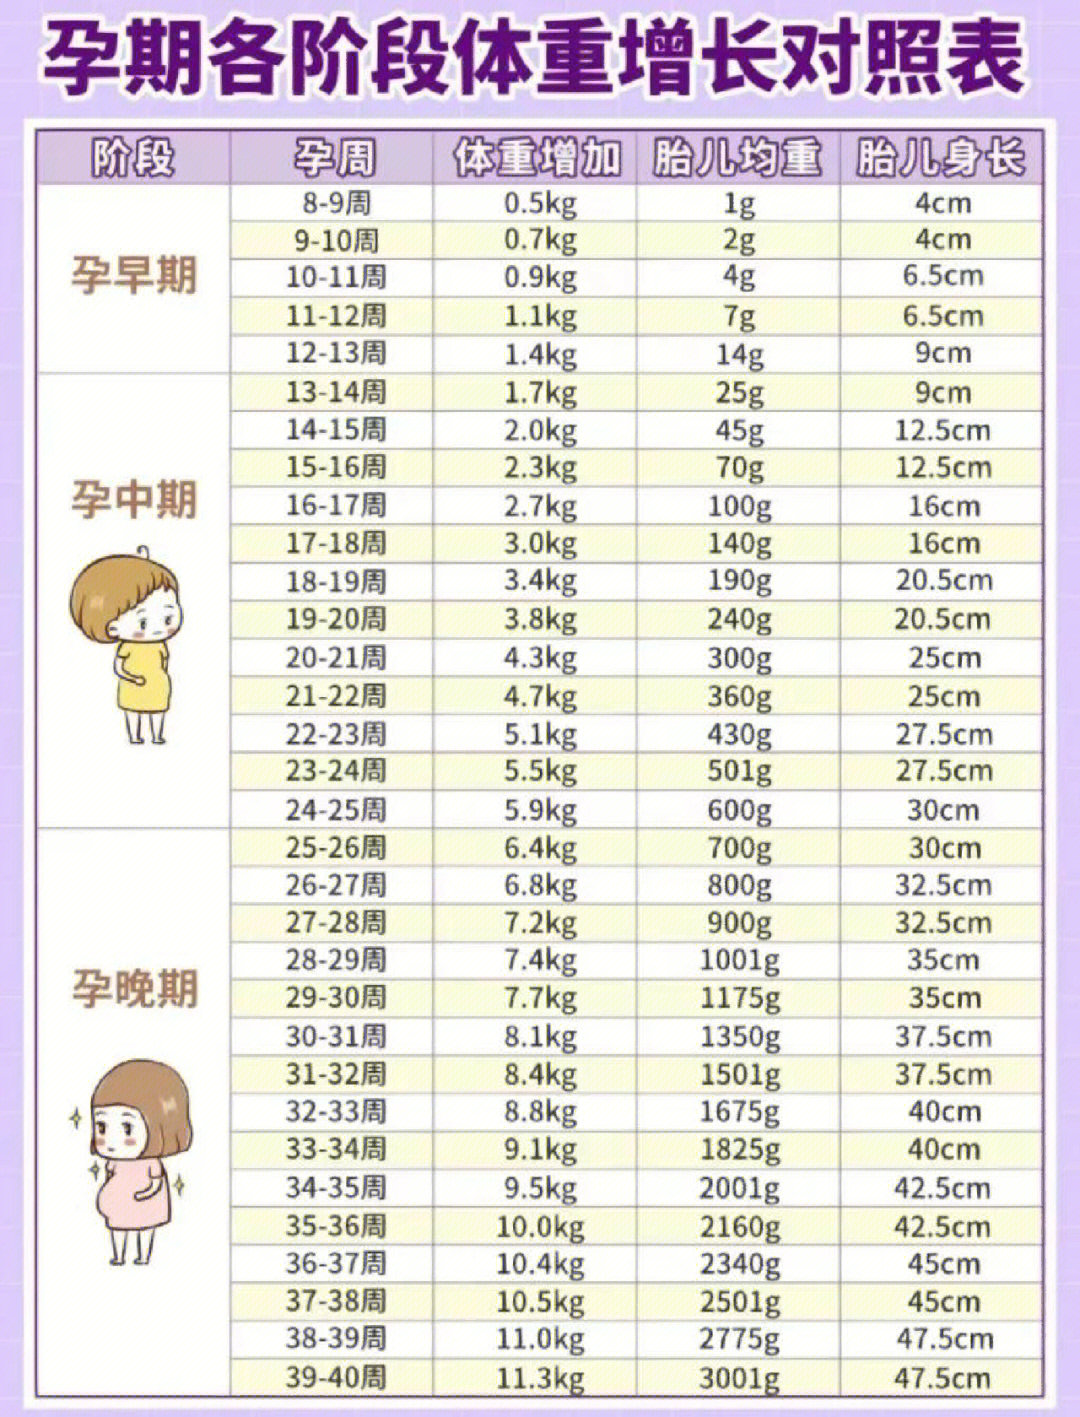 胎儿体重标准值对照表图片